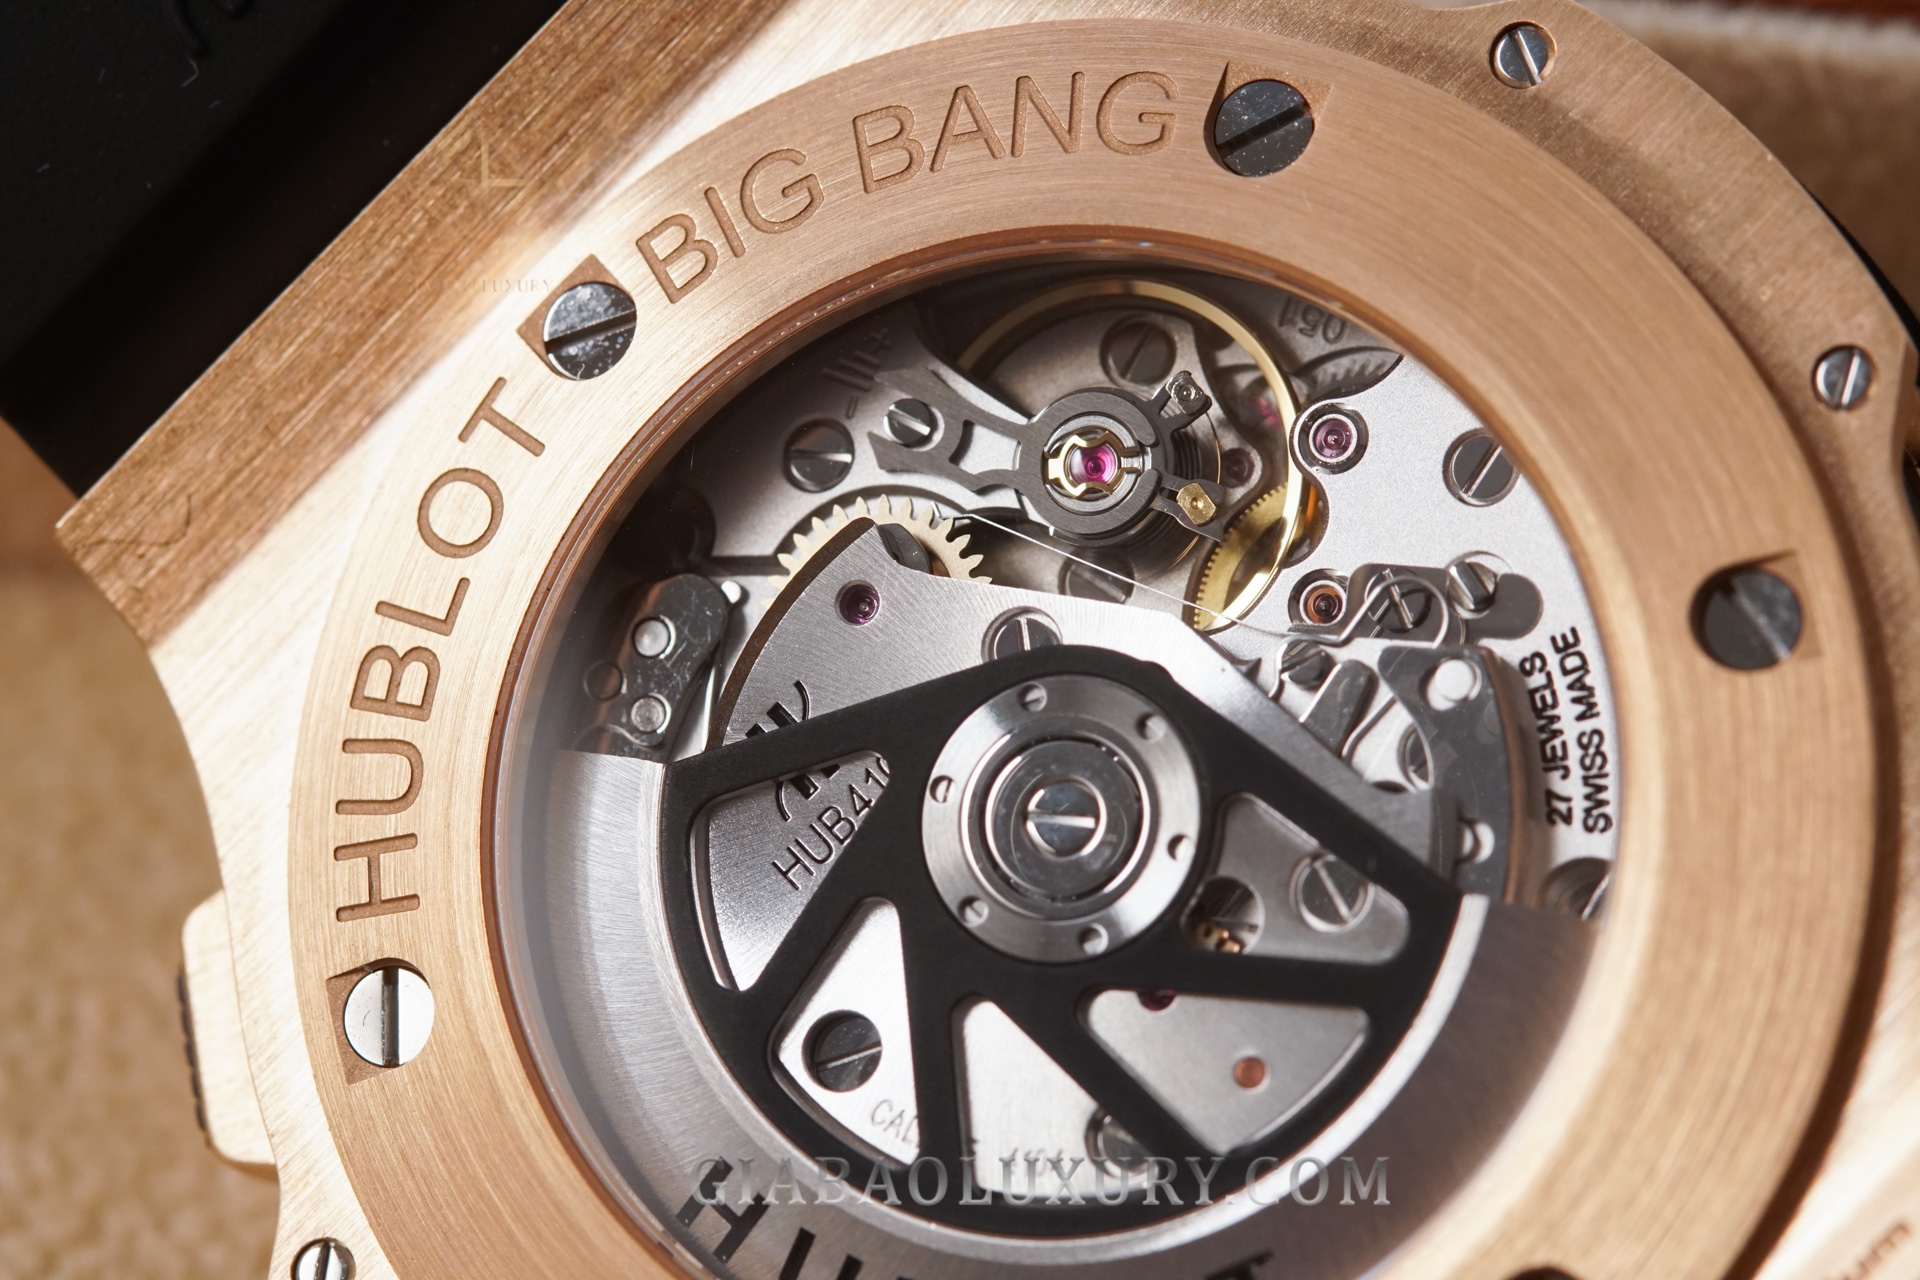 Đồng hồ Big Bang Chronograph 44mm 301.px.1180.rx.1104